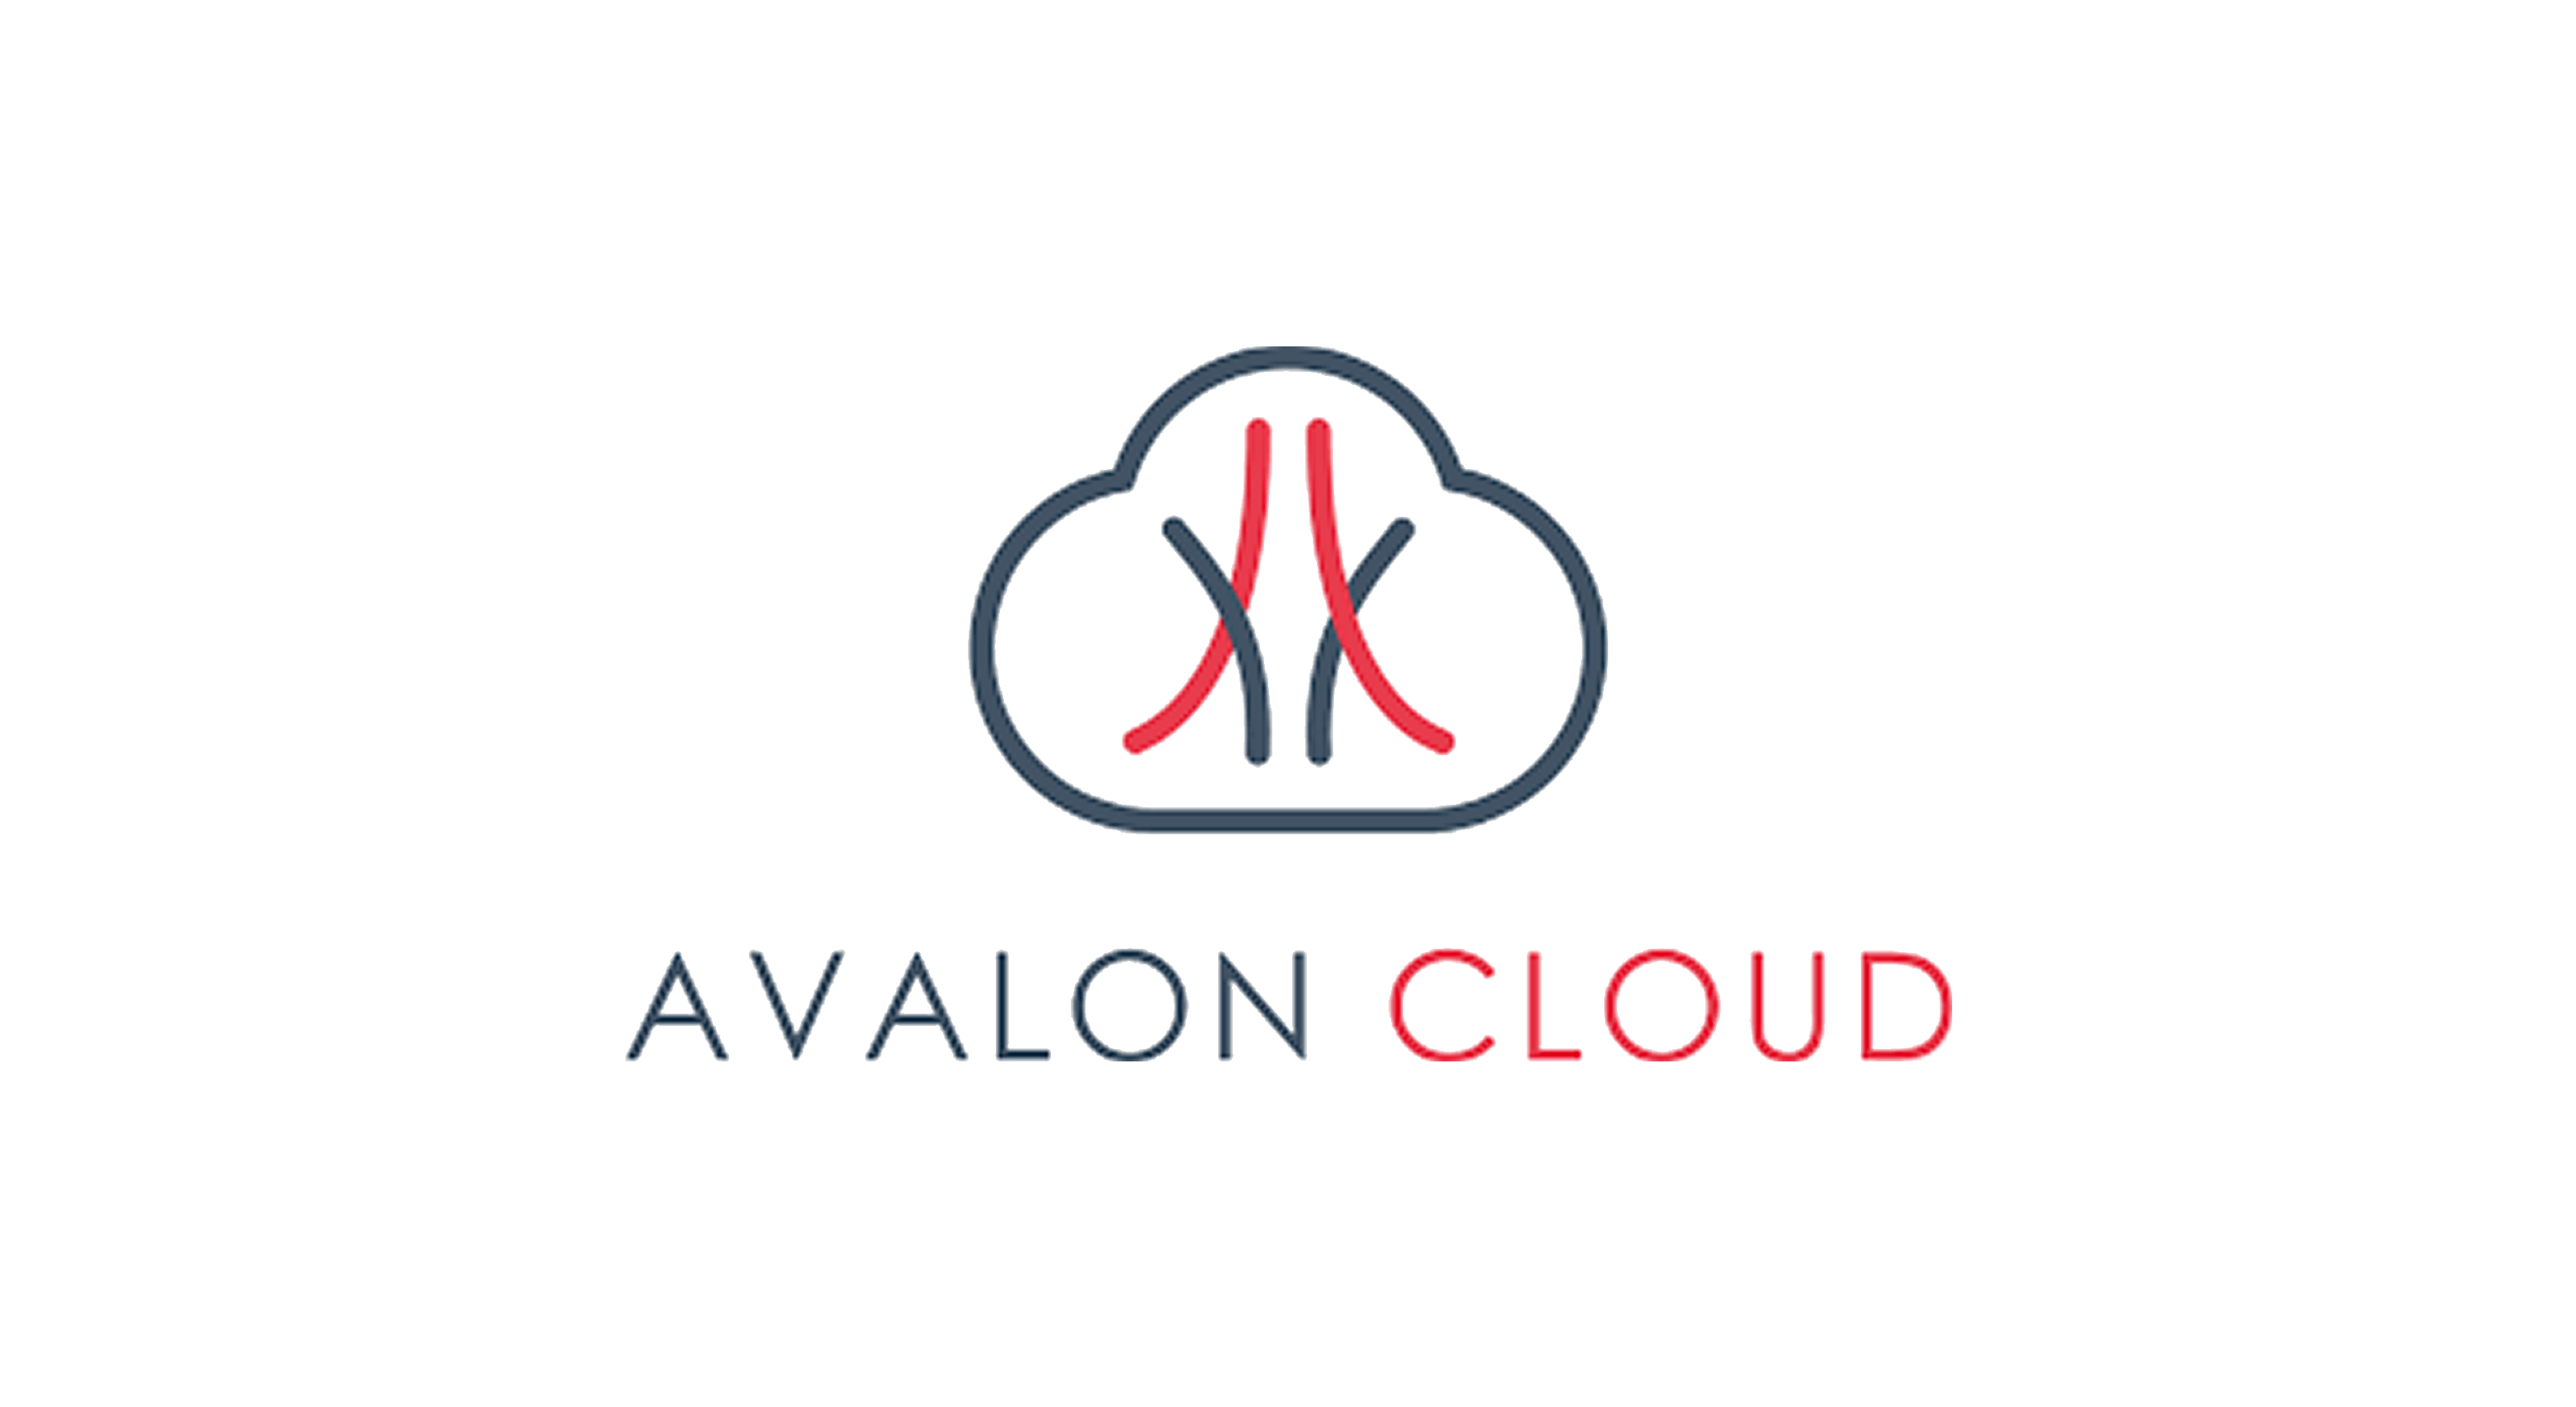 Avalon Cloud